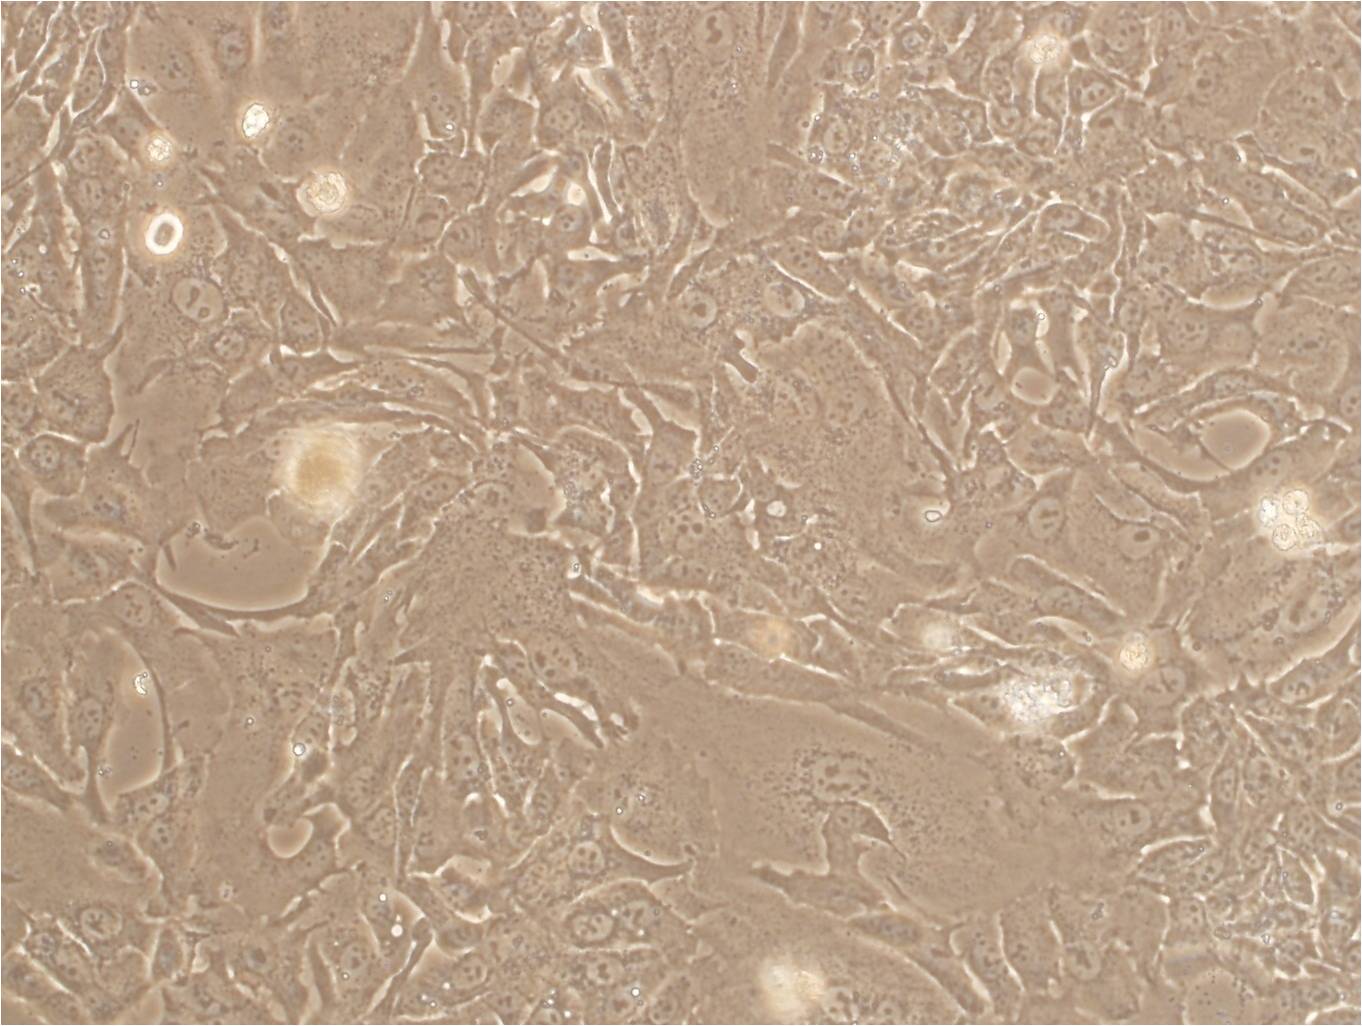 MEC-1 cell line人粘液表皮样癌细胞系,MEC-1 cell line